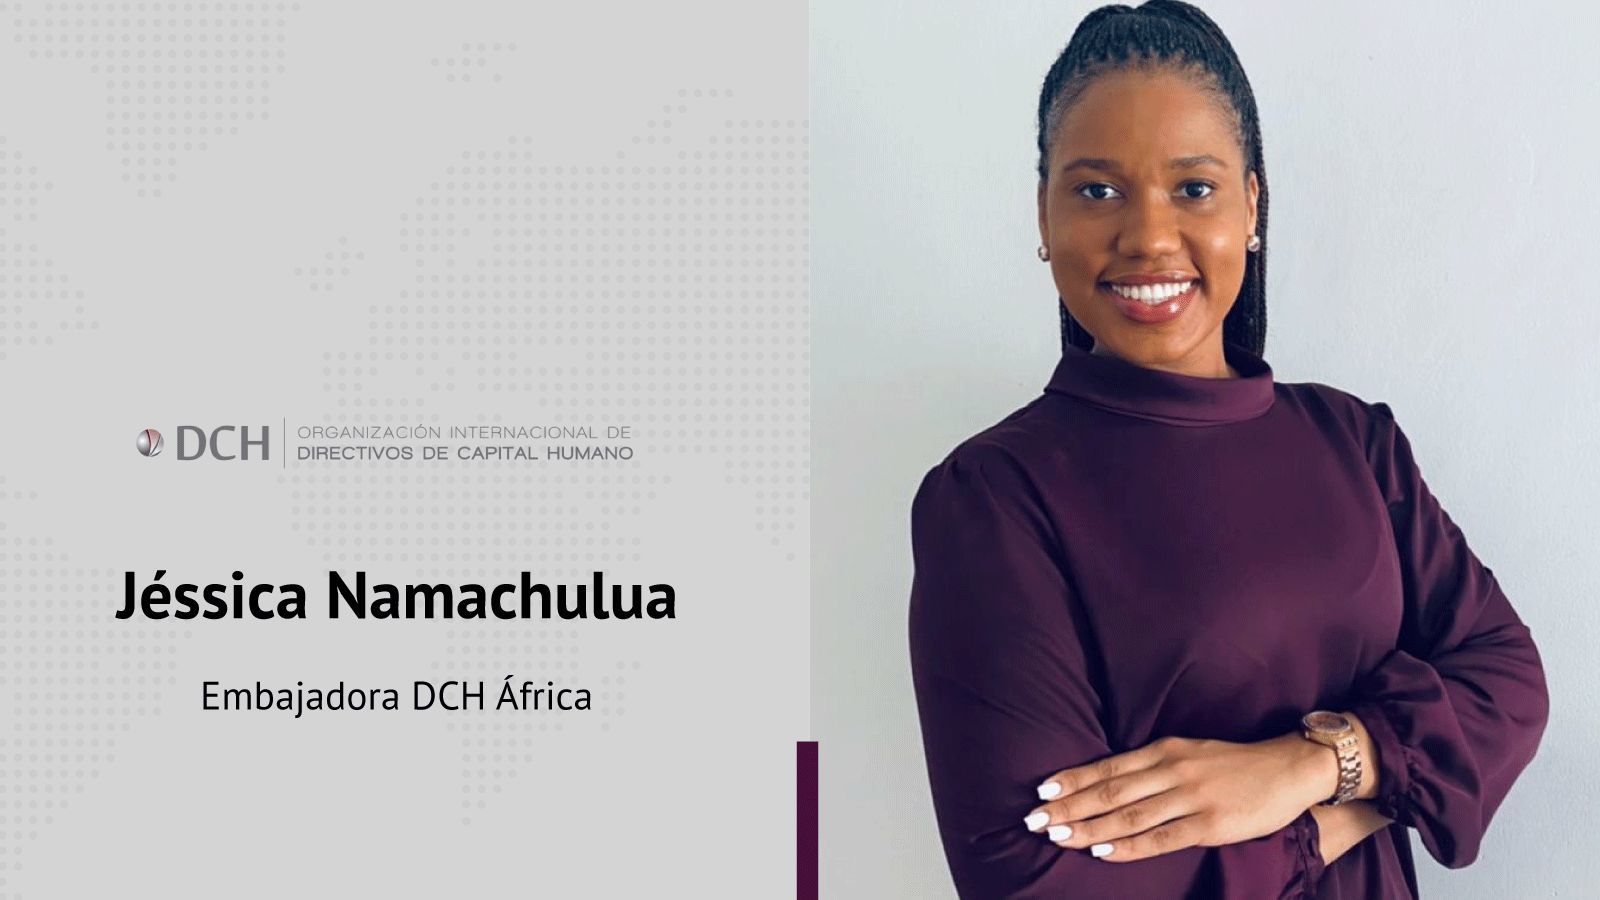 Embajadora en Africa de DCH